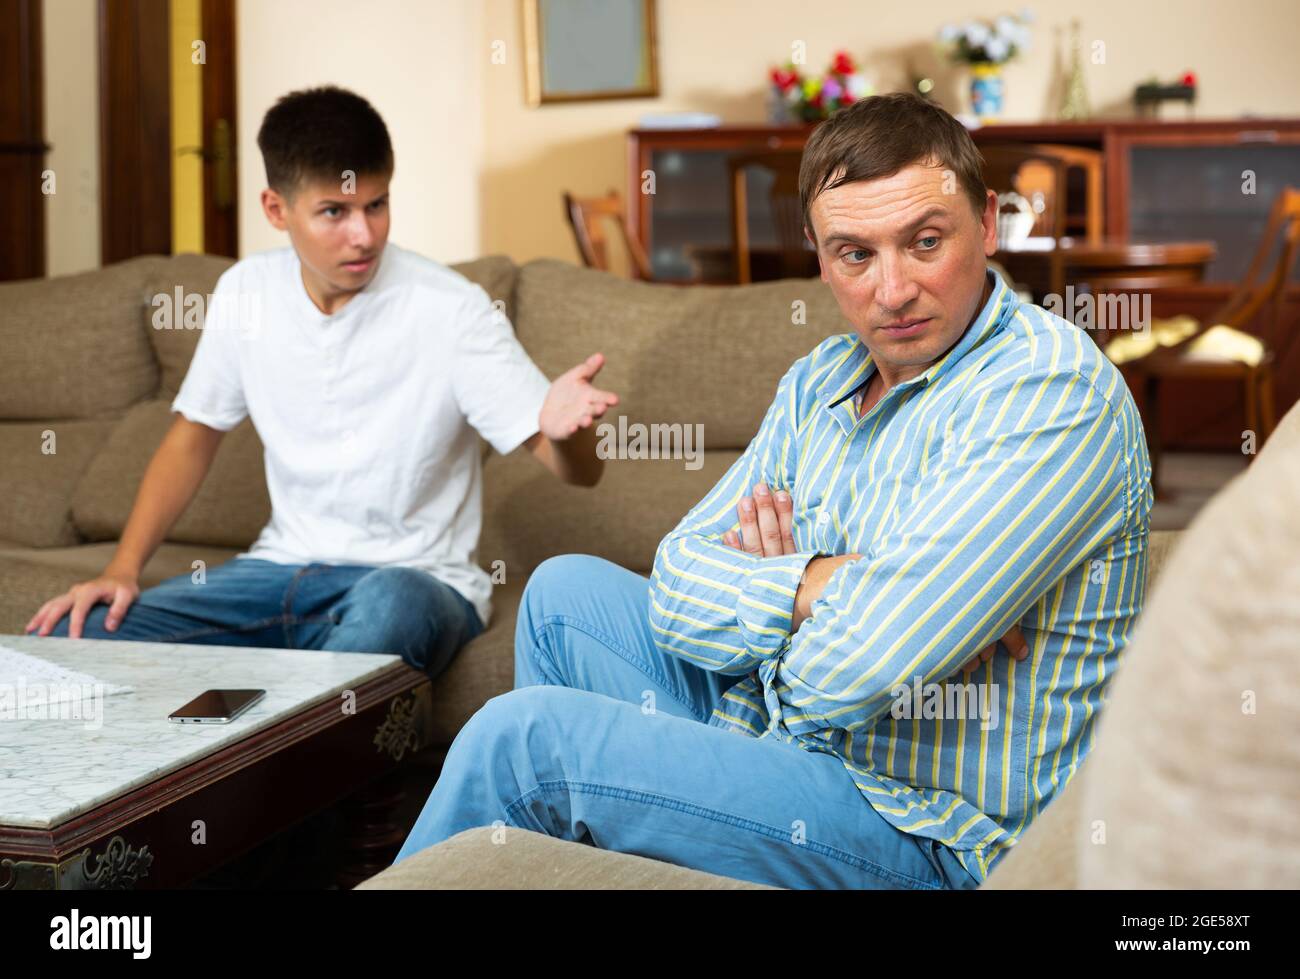 Un père contrarié assis tout en se querellant avec son fils adolescent Banque D'Images